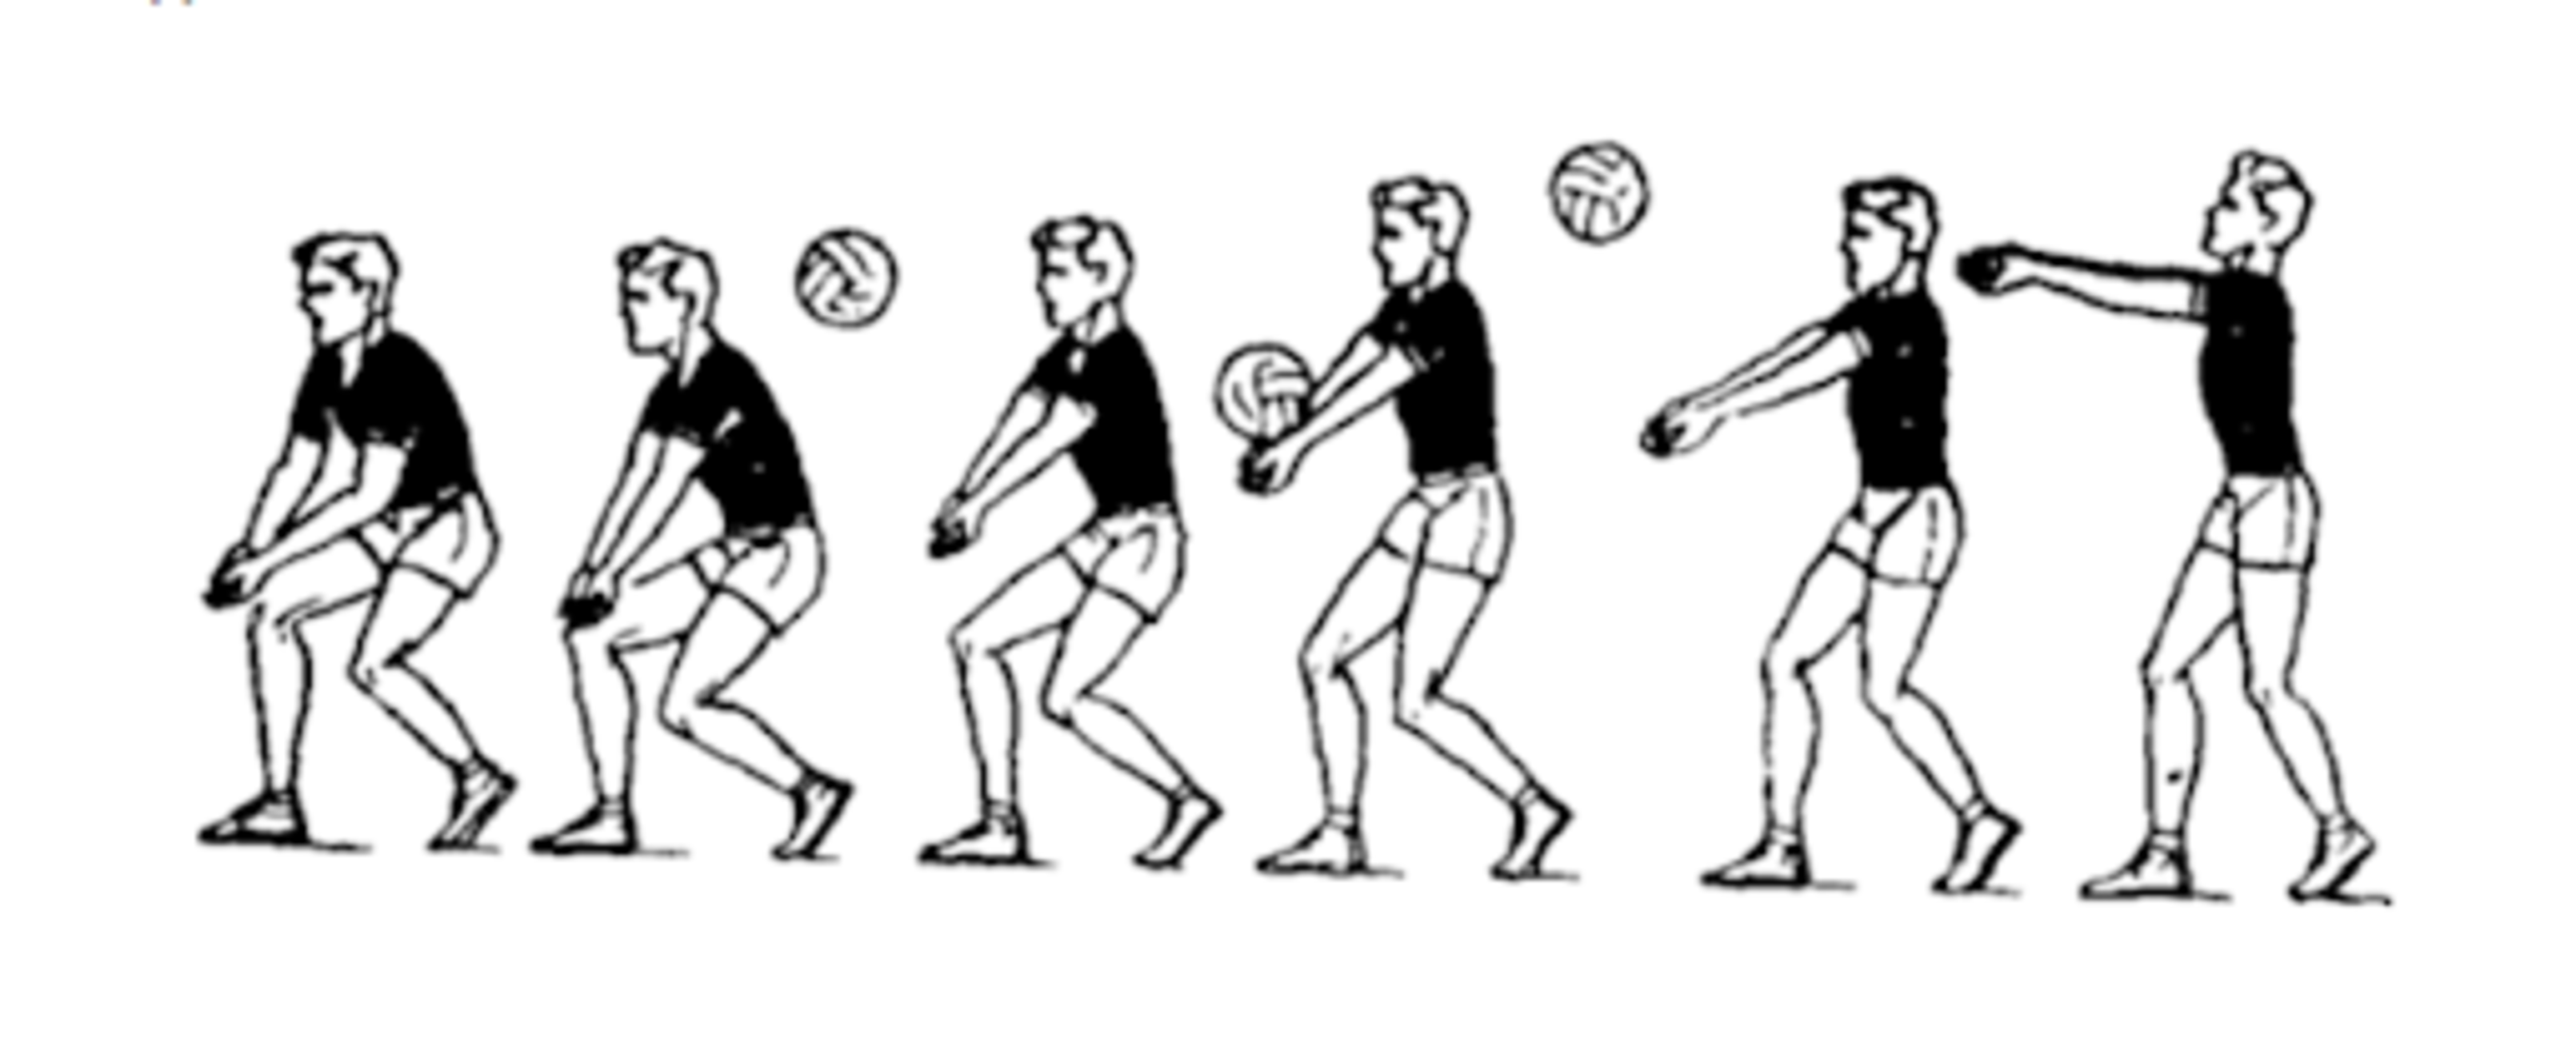 Техника приема и передачи мяча снизу двумя руками в волейболе. Приём мяча снизу 2 руками в волейболе. Техника приема мяча снизу двумя руками. Прием снизу двумя руками в волейболе. Прием и передача мяча снизу в волейболе